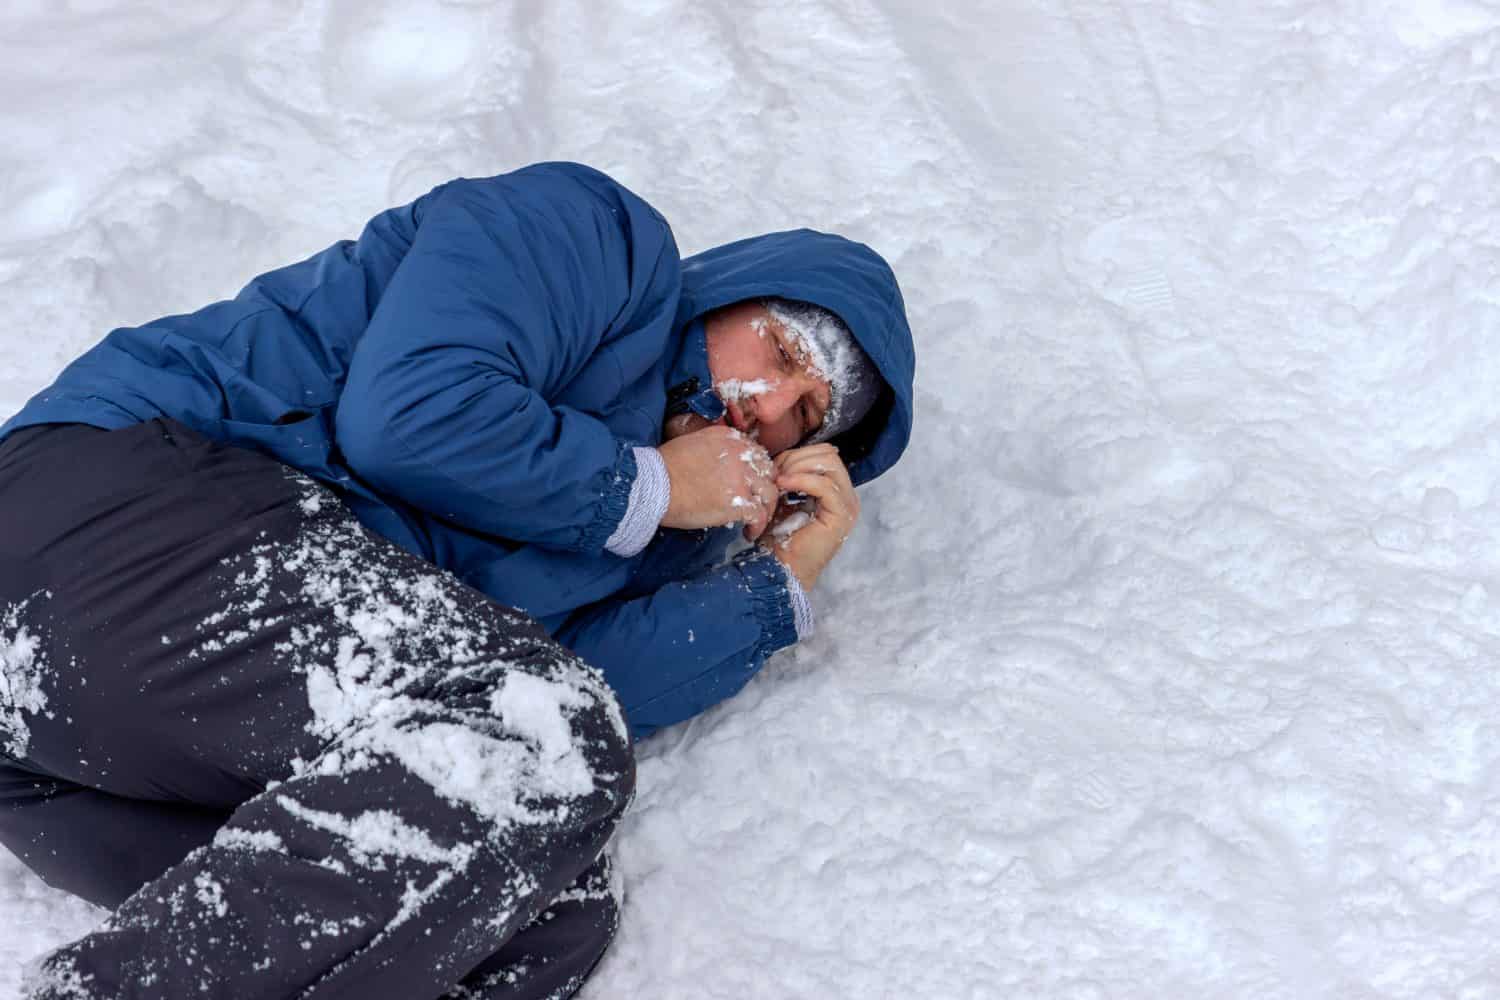 Un uomo congelato con una giacca blu e un cappello sdraiato coperto di neve e gelo, cercando di stare al caldo in una giornata invernale molto fredda, la neve cade intorno a lui.  Alpinista malato con ipotermia sulla neve durante il giorno.